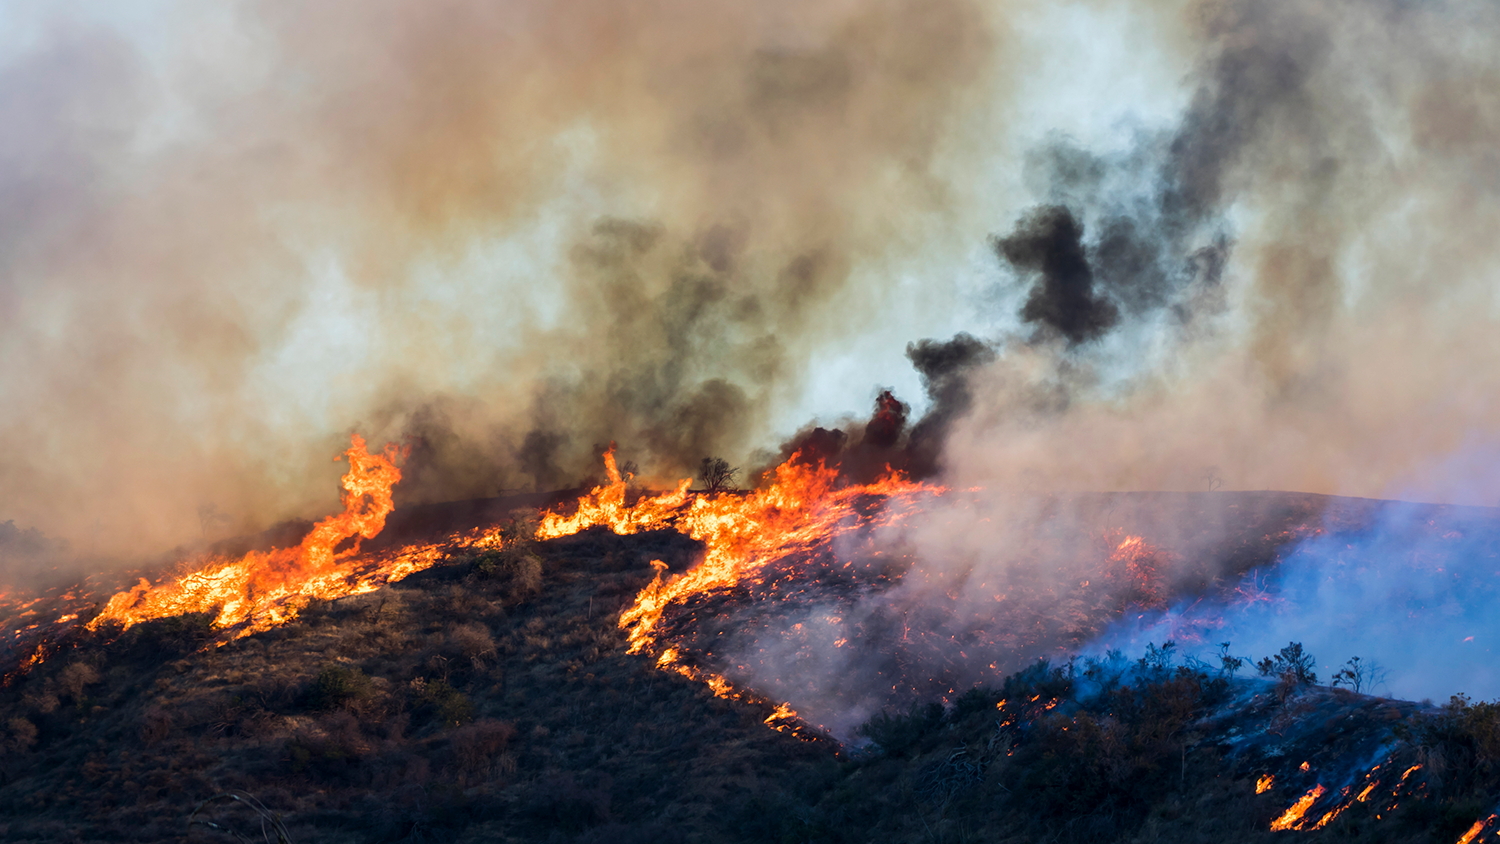 Ярко-оранжевое пламя и дым в черно-сером и белом цветах, пока горит склон холма во время пожара Вулси в Калифорнии.